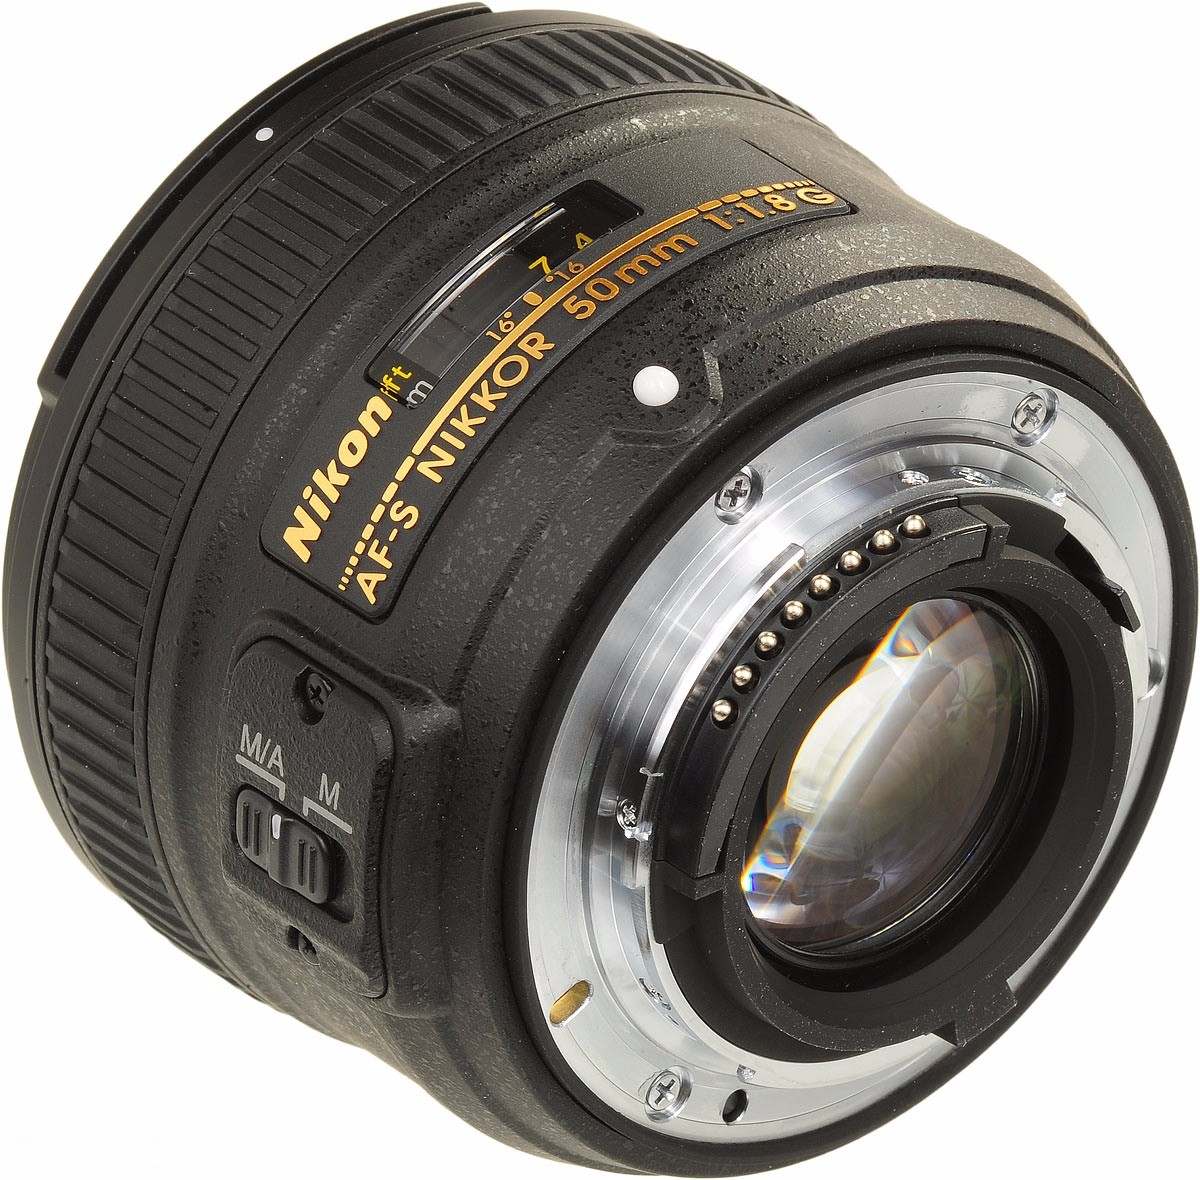 Lente Nikon Af-s Nikkor 50mm F/1.8g - Garantia E Nf - R$ 885,99 em Mercado Livre